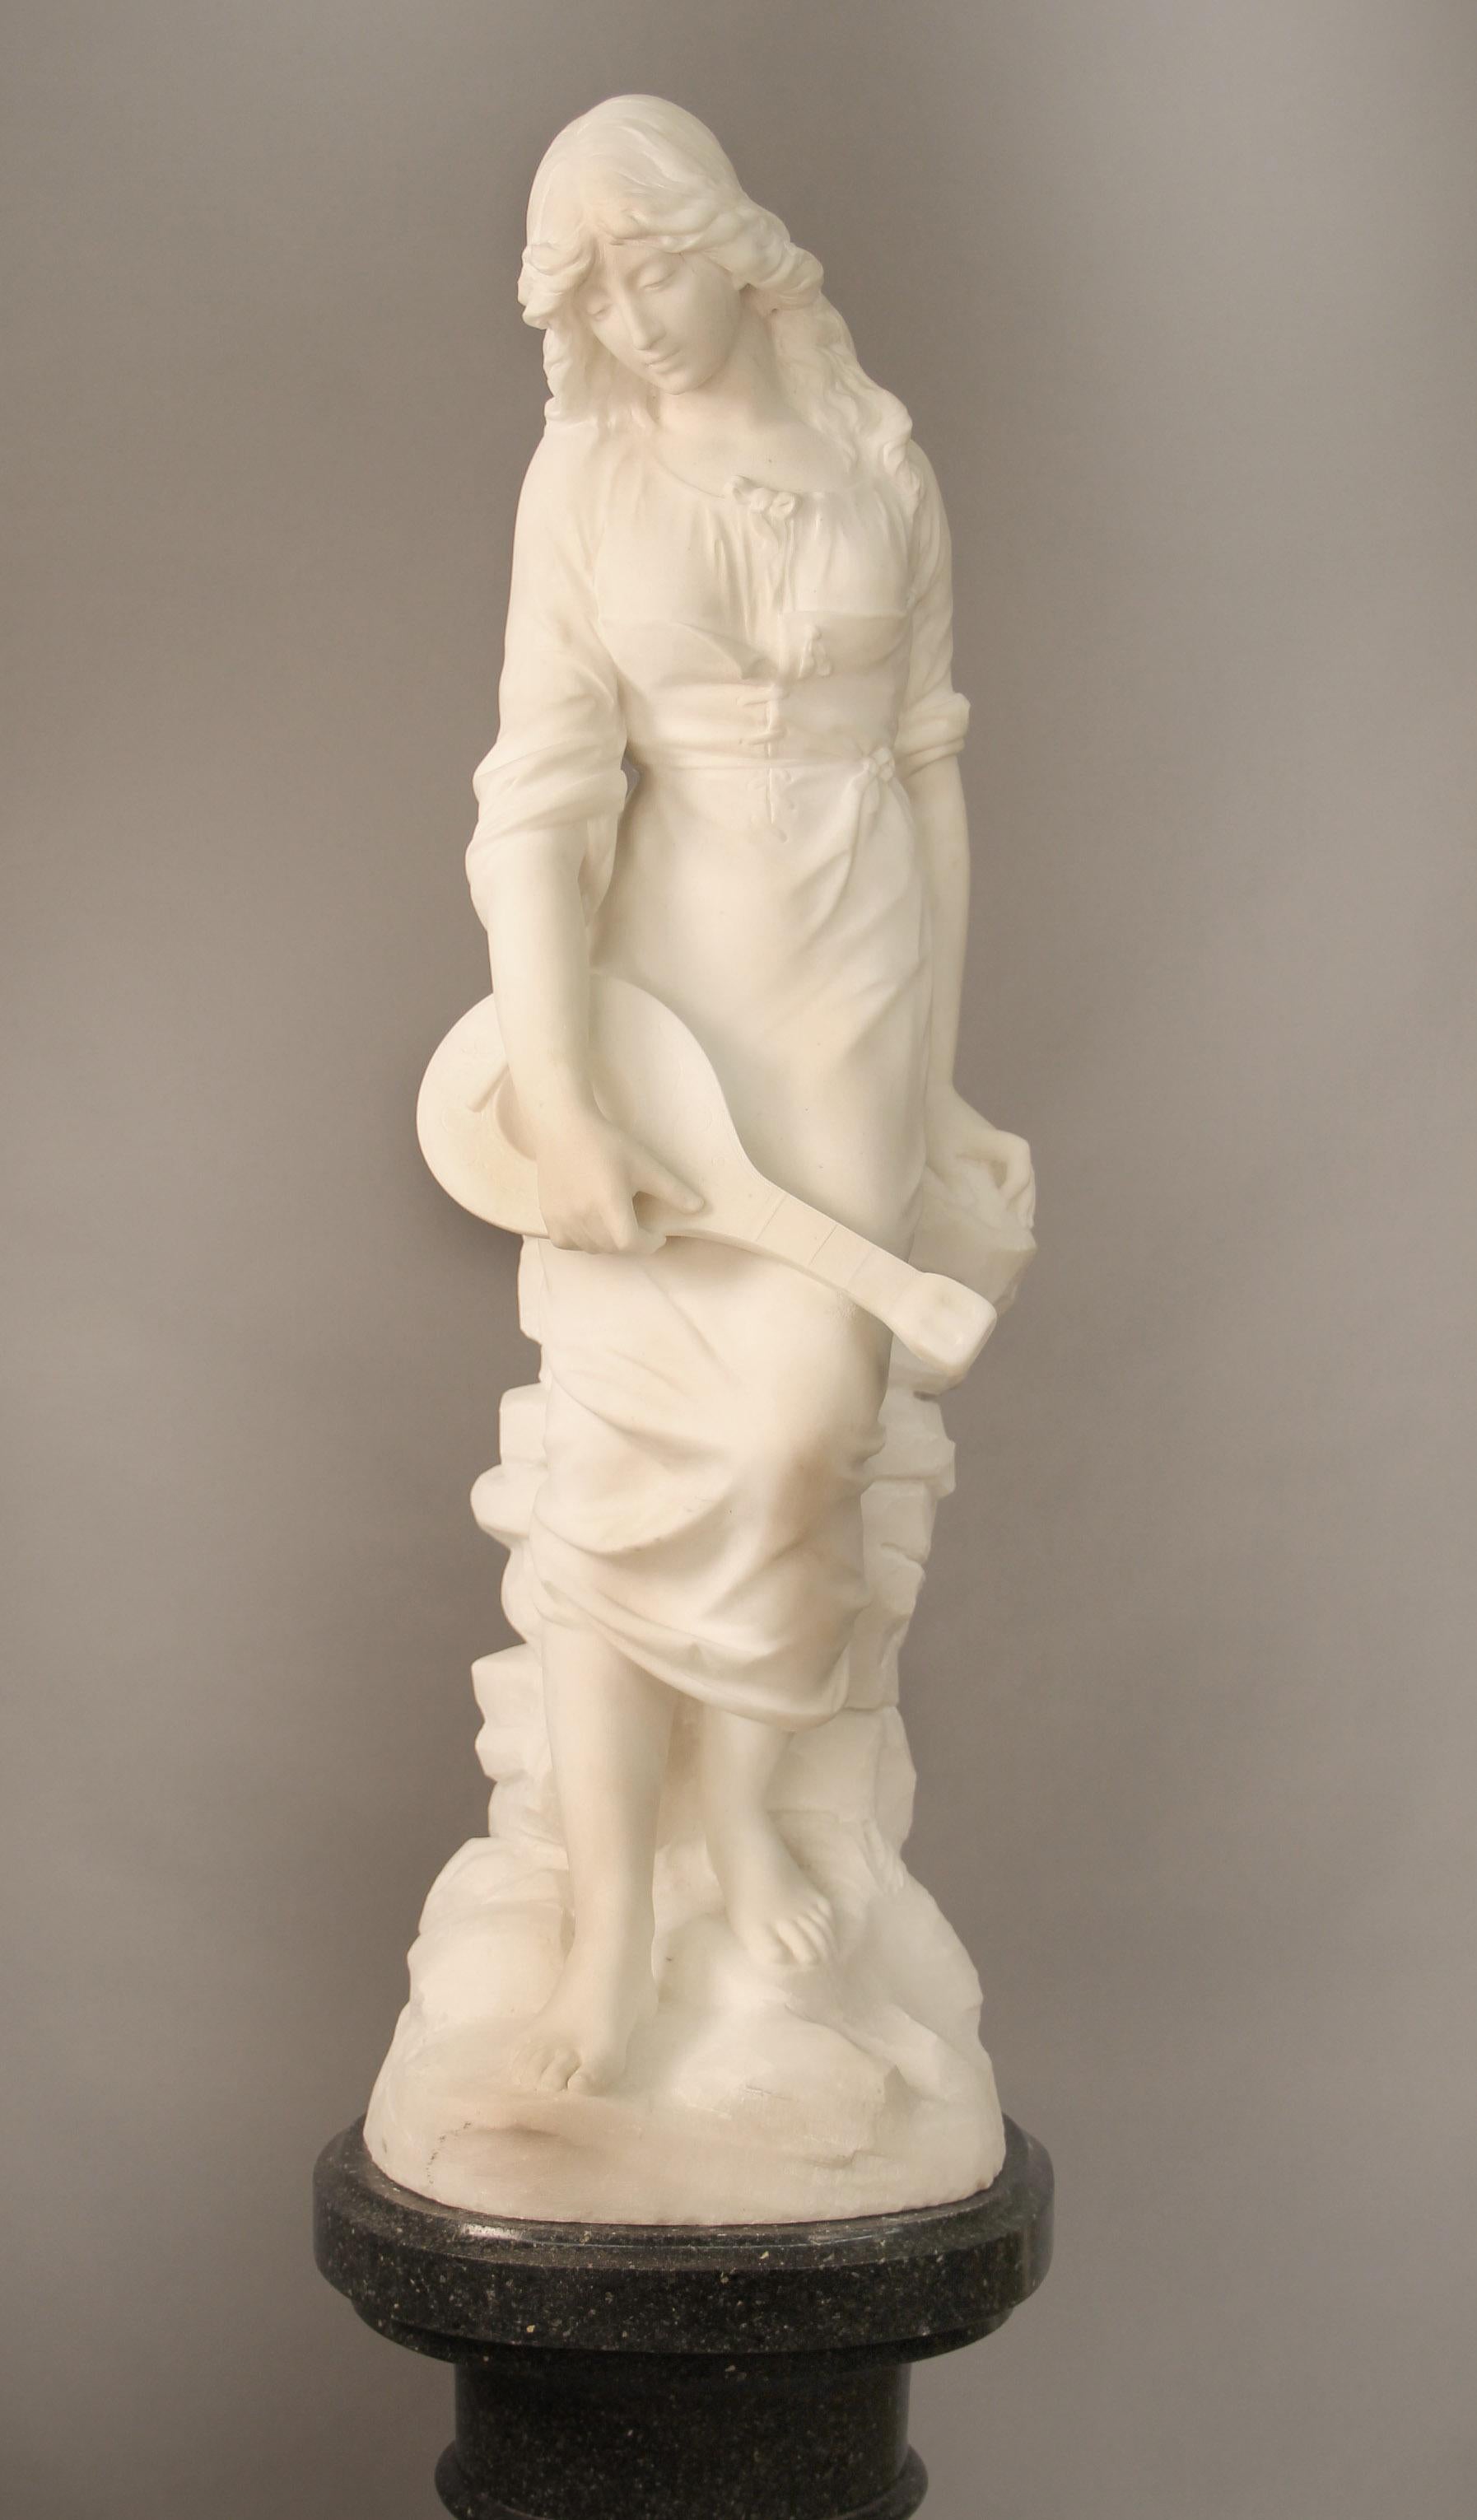 Un beau marbre blanc de Carrare français de la fin du 19ème siècle représentant une femme et sa mandoline

Signé Paul Fournier

Paul Fournier (Français, 1859-1926), a réalisé de nombreux bustes de femmes en taille réelle à la fin du XIXe siècle.